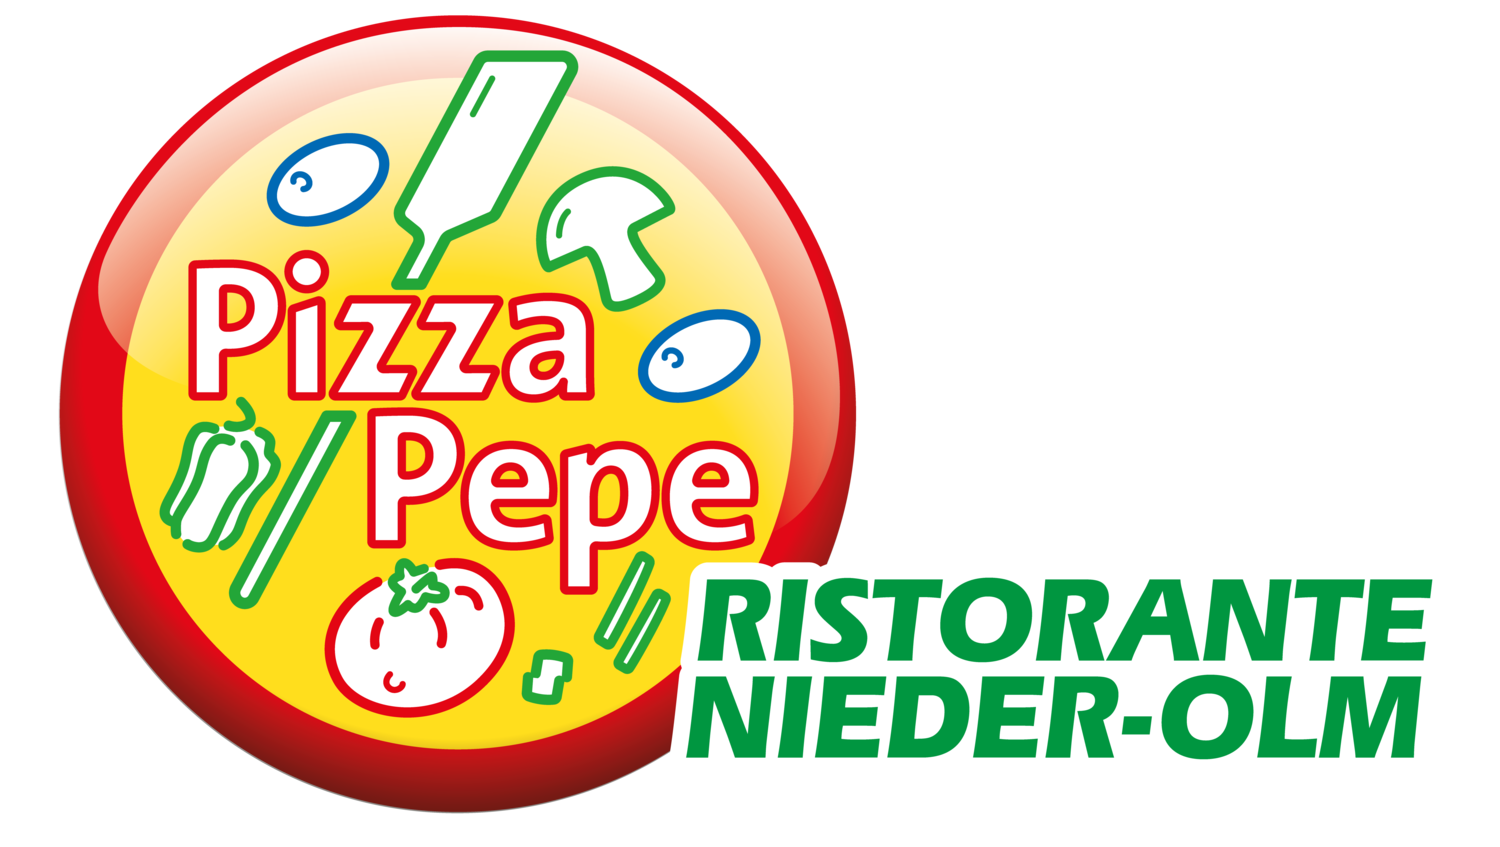 (c) Pepe-nieder-olm.de